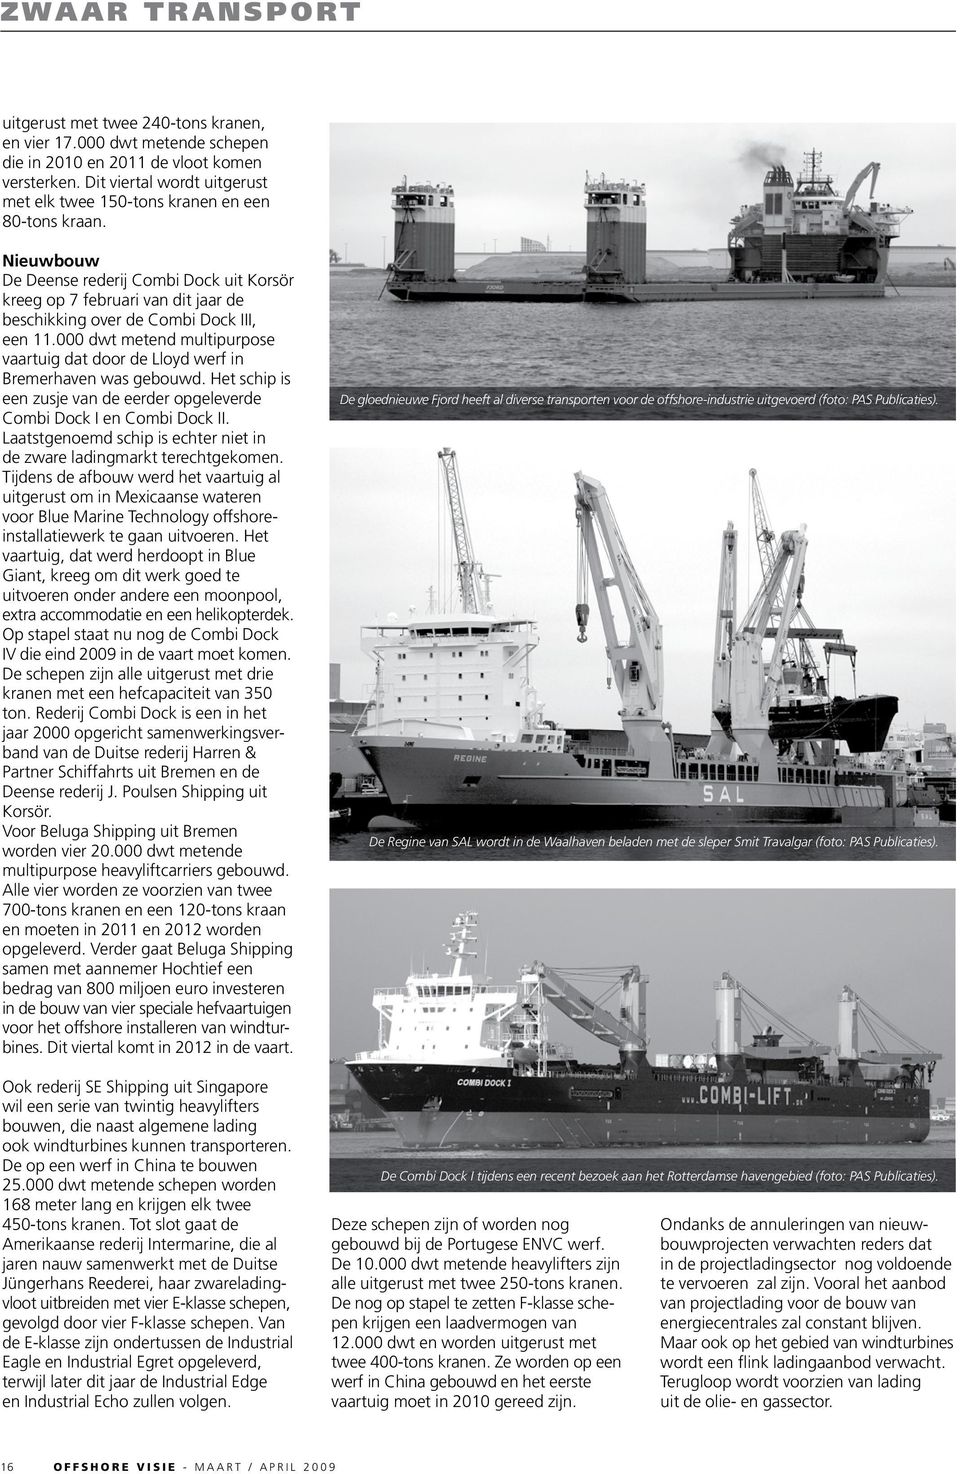 Nieuwbouw De Deense rederij Combi Dock uit Korsör kreeg op 7 februari van dit jaar de beschikking over de Combi Dock III, een 11.